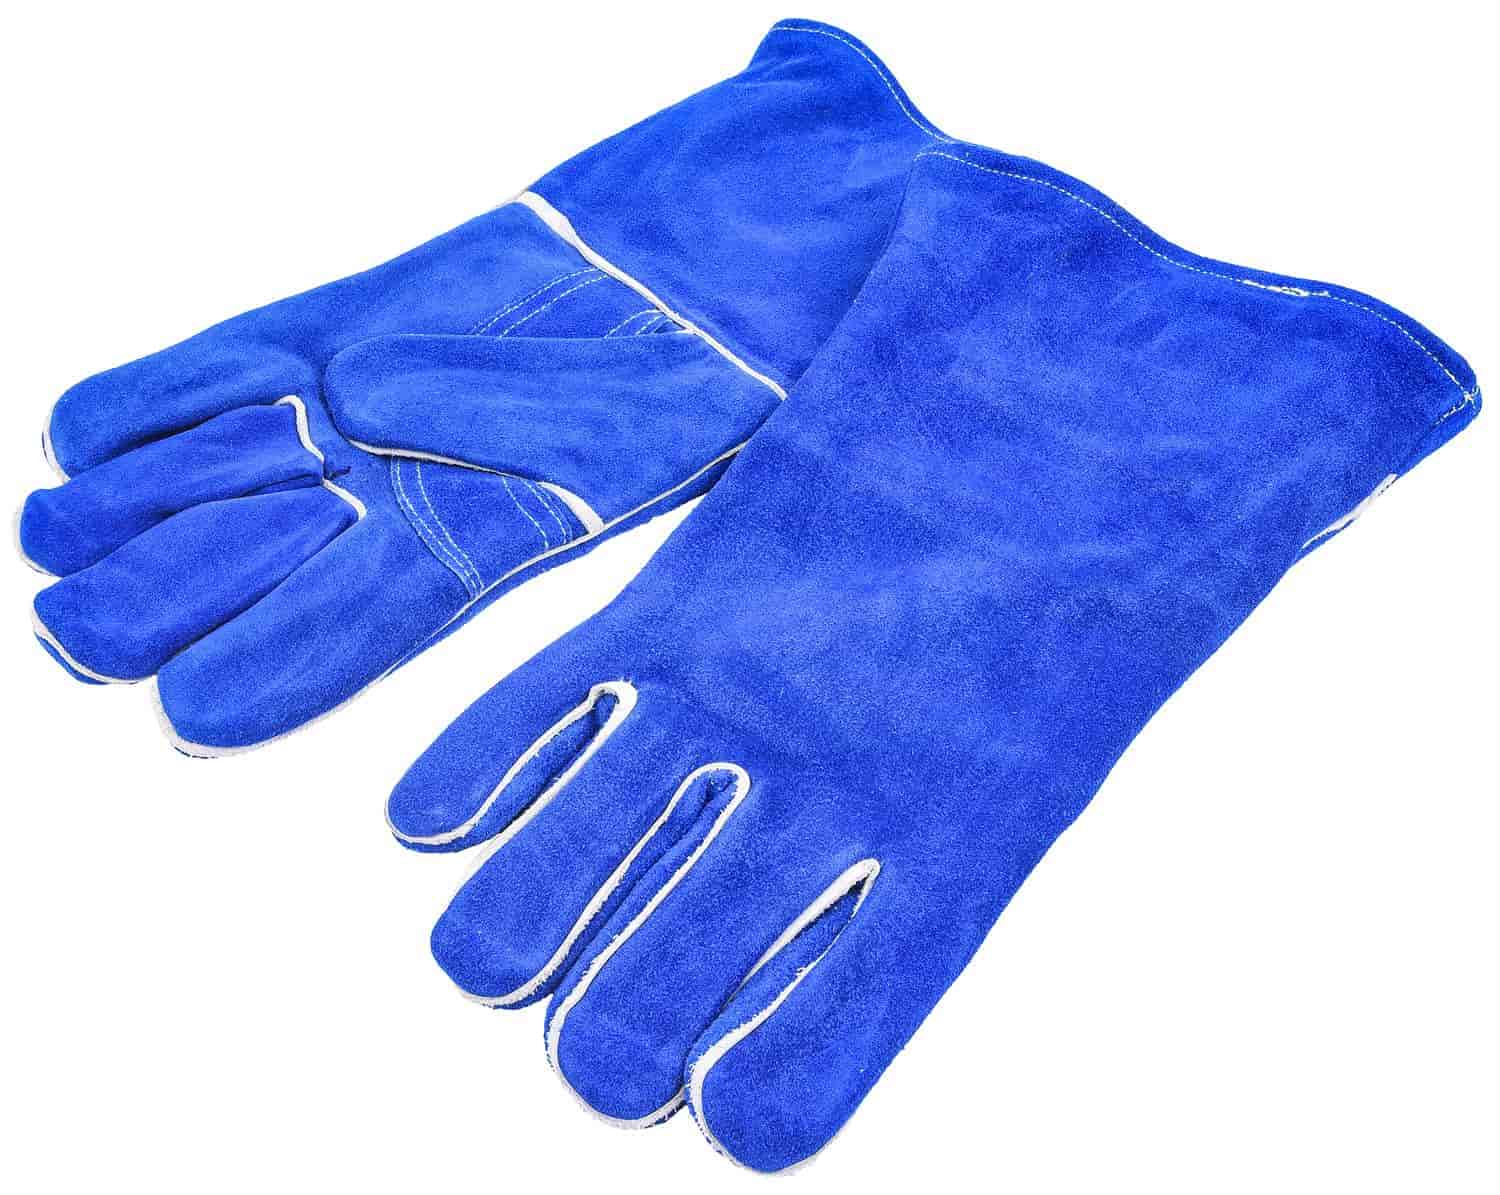 Heavy-Duty Welding Gloves (Cotton Lined)